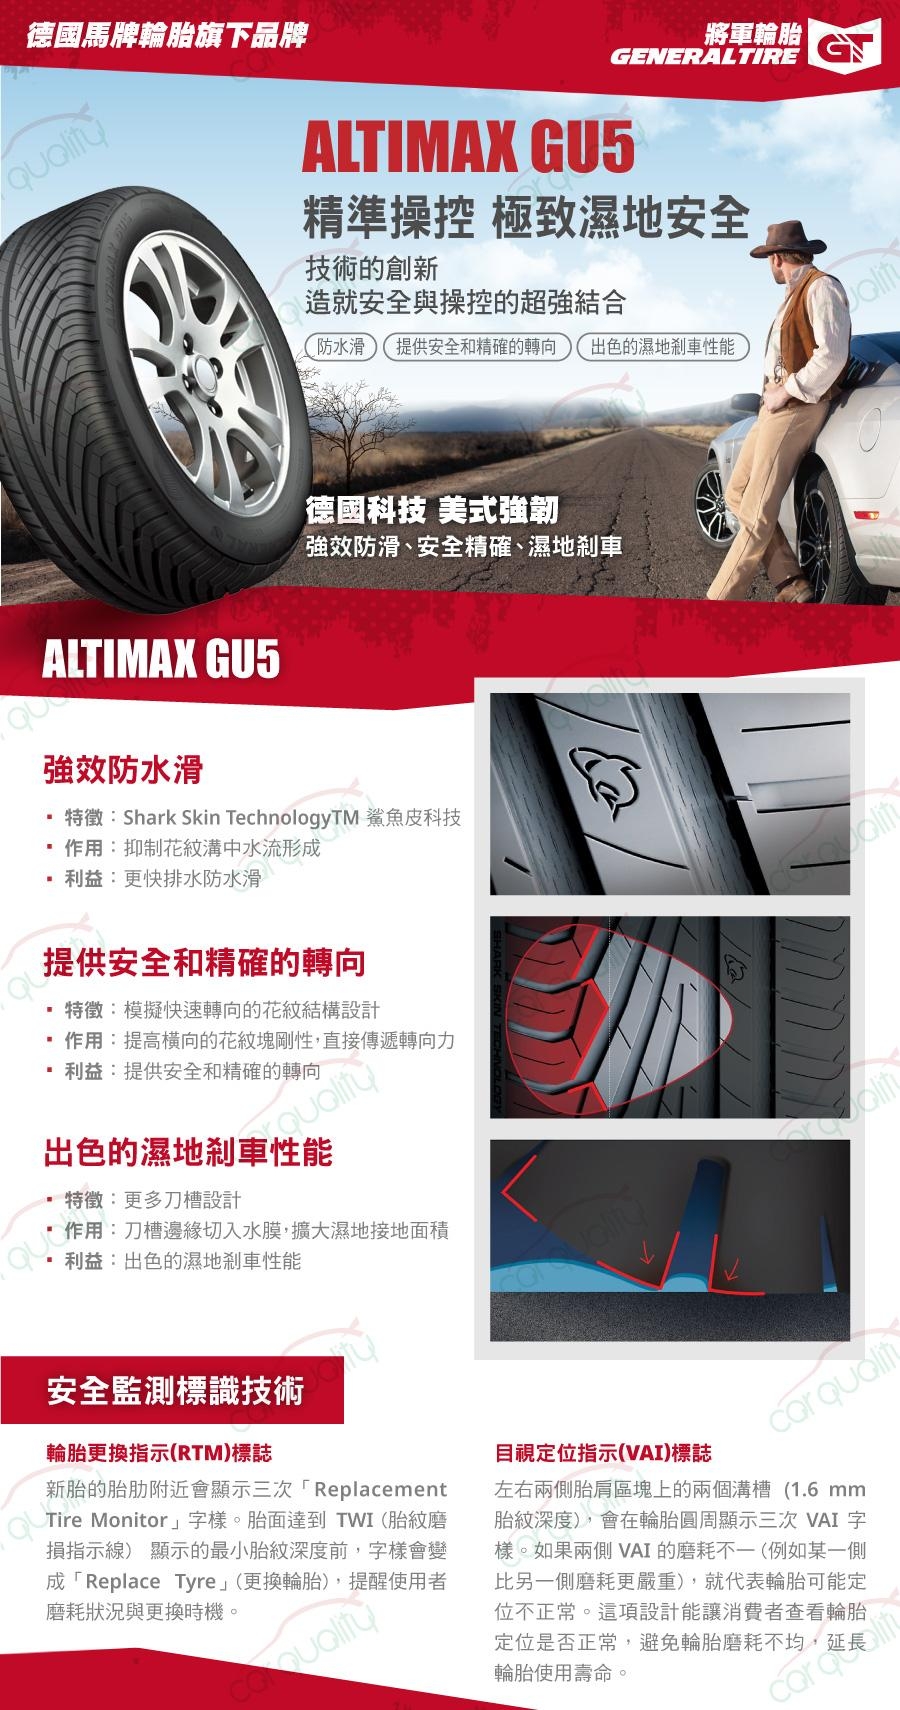 【將軍】ALTIMAX GU5_225/55/17吋濕地輪胎_送專業安裝 四入組(GU5)